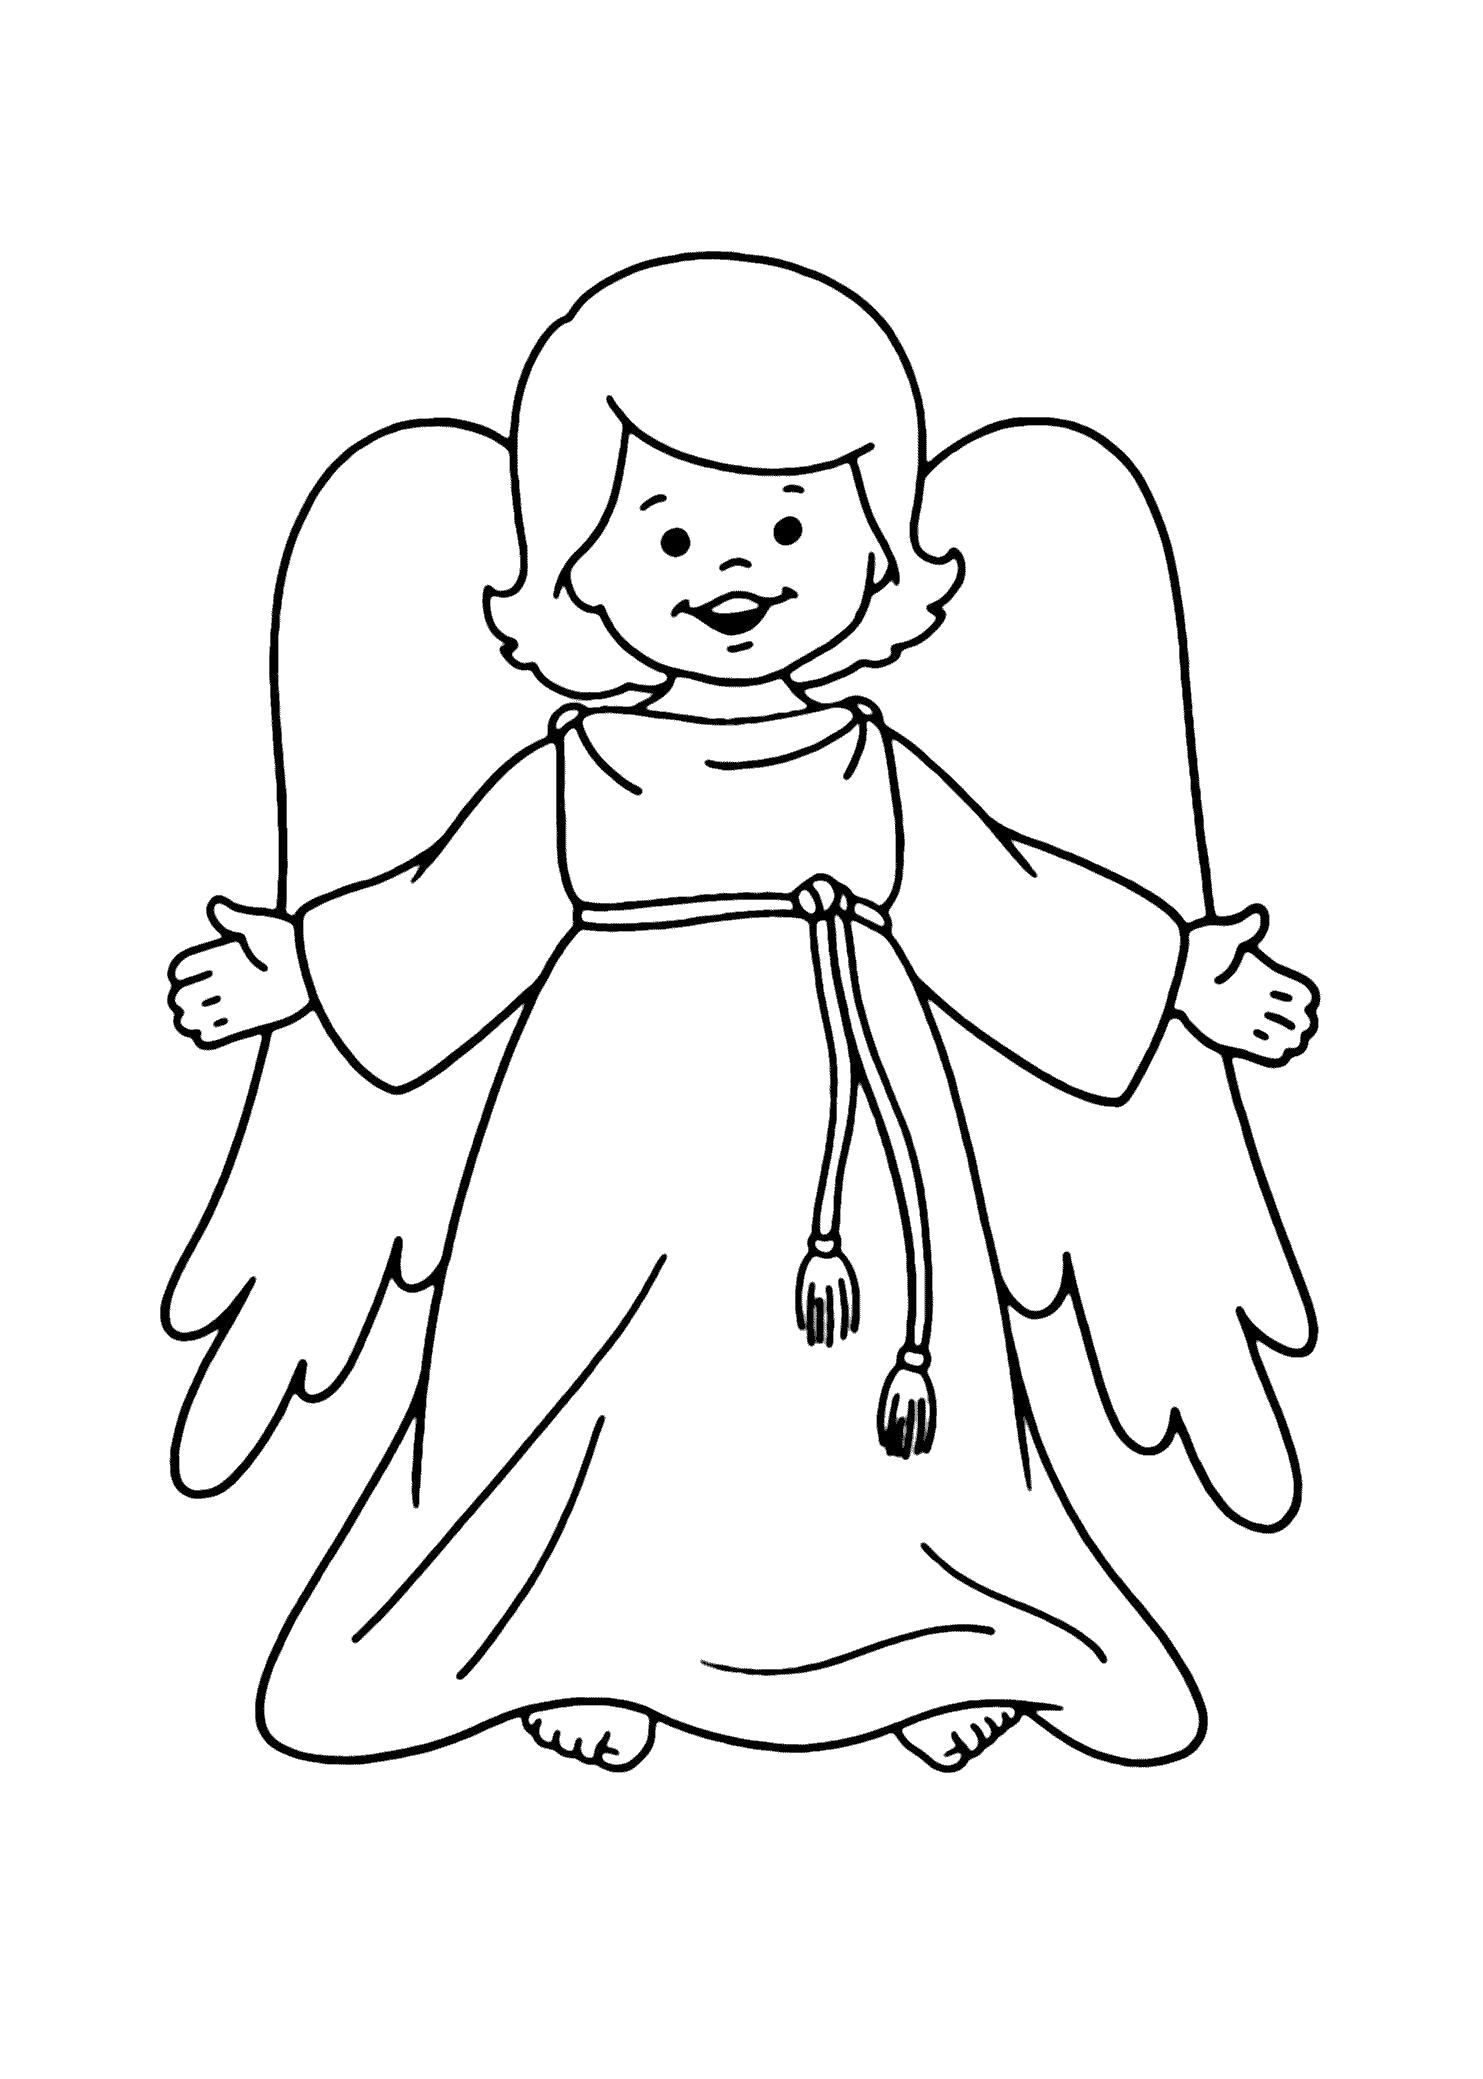 Раскраска  для детей Ангел. Скачать ангел.  Распечатать мифические существа